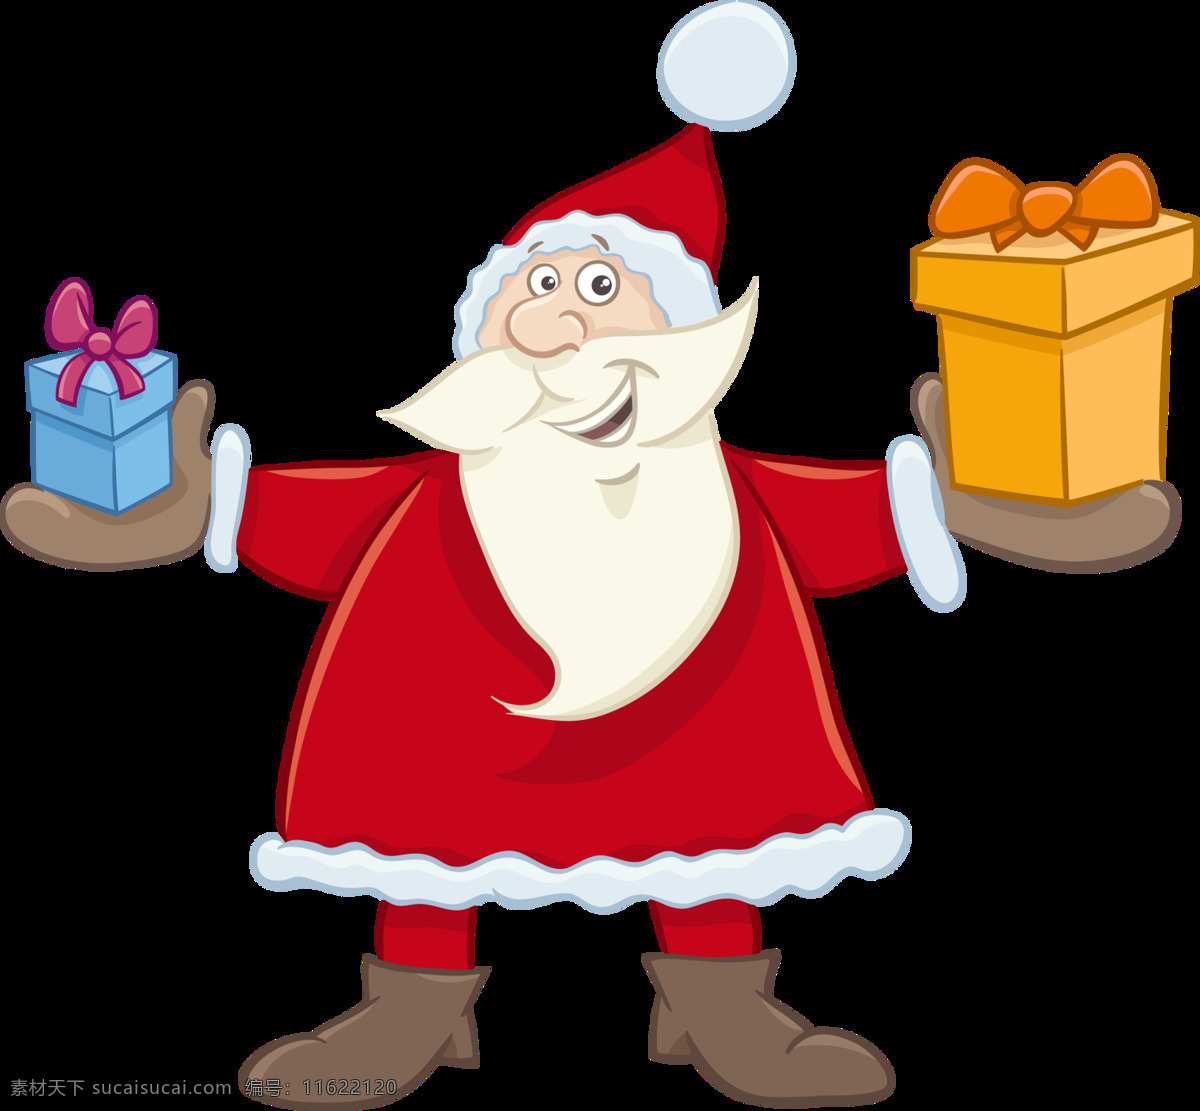 双手 礼物 圣诞老人 christmas merry 发礼物 卡通圣诞元素 设计素材 圣诞png 手 送礼物